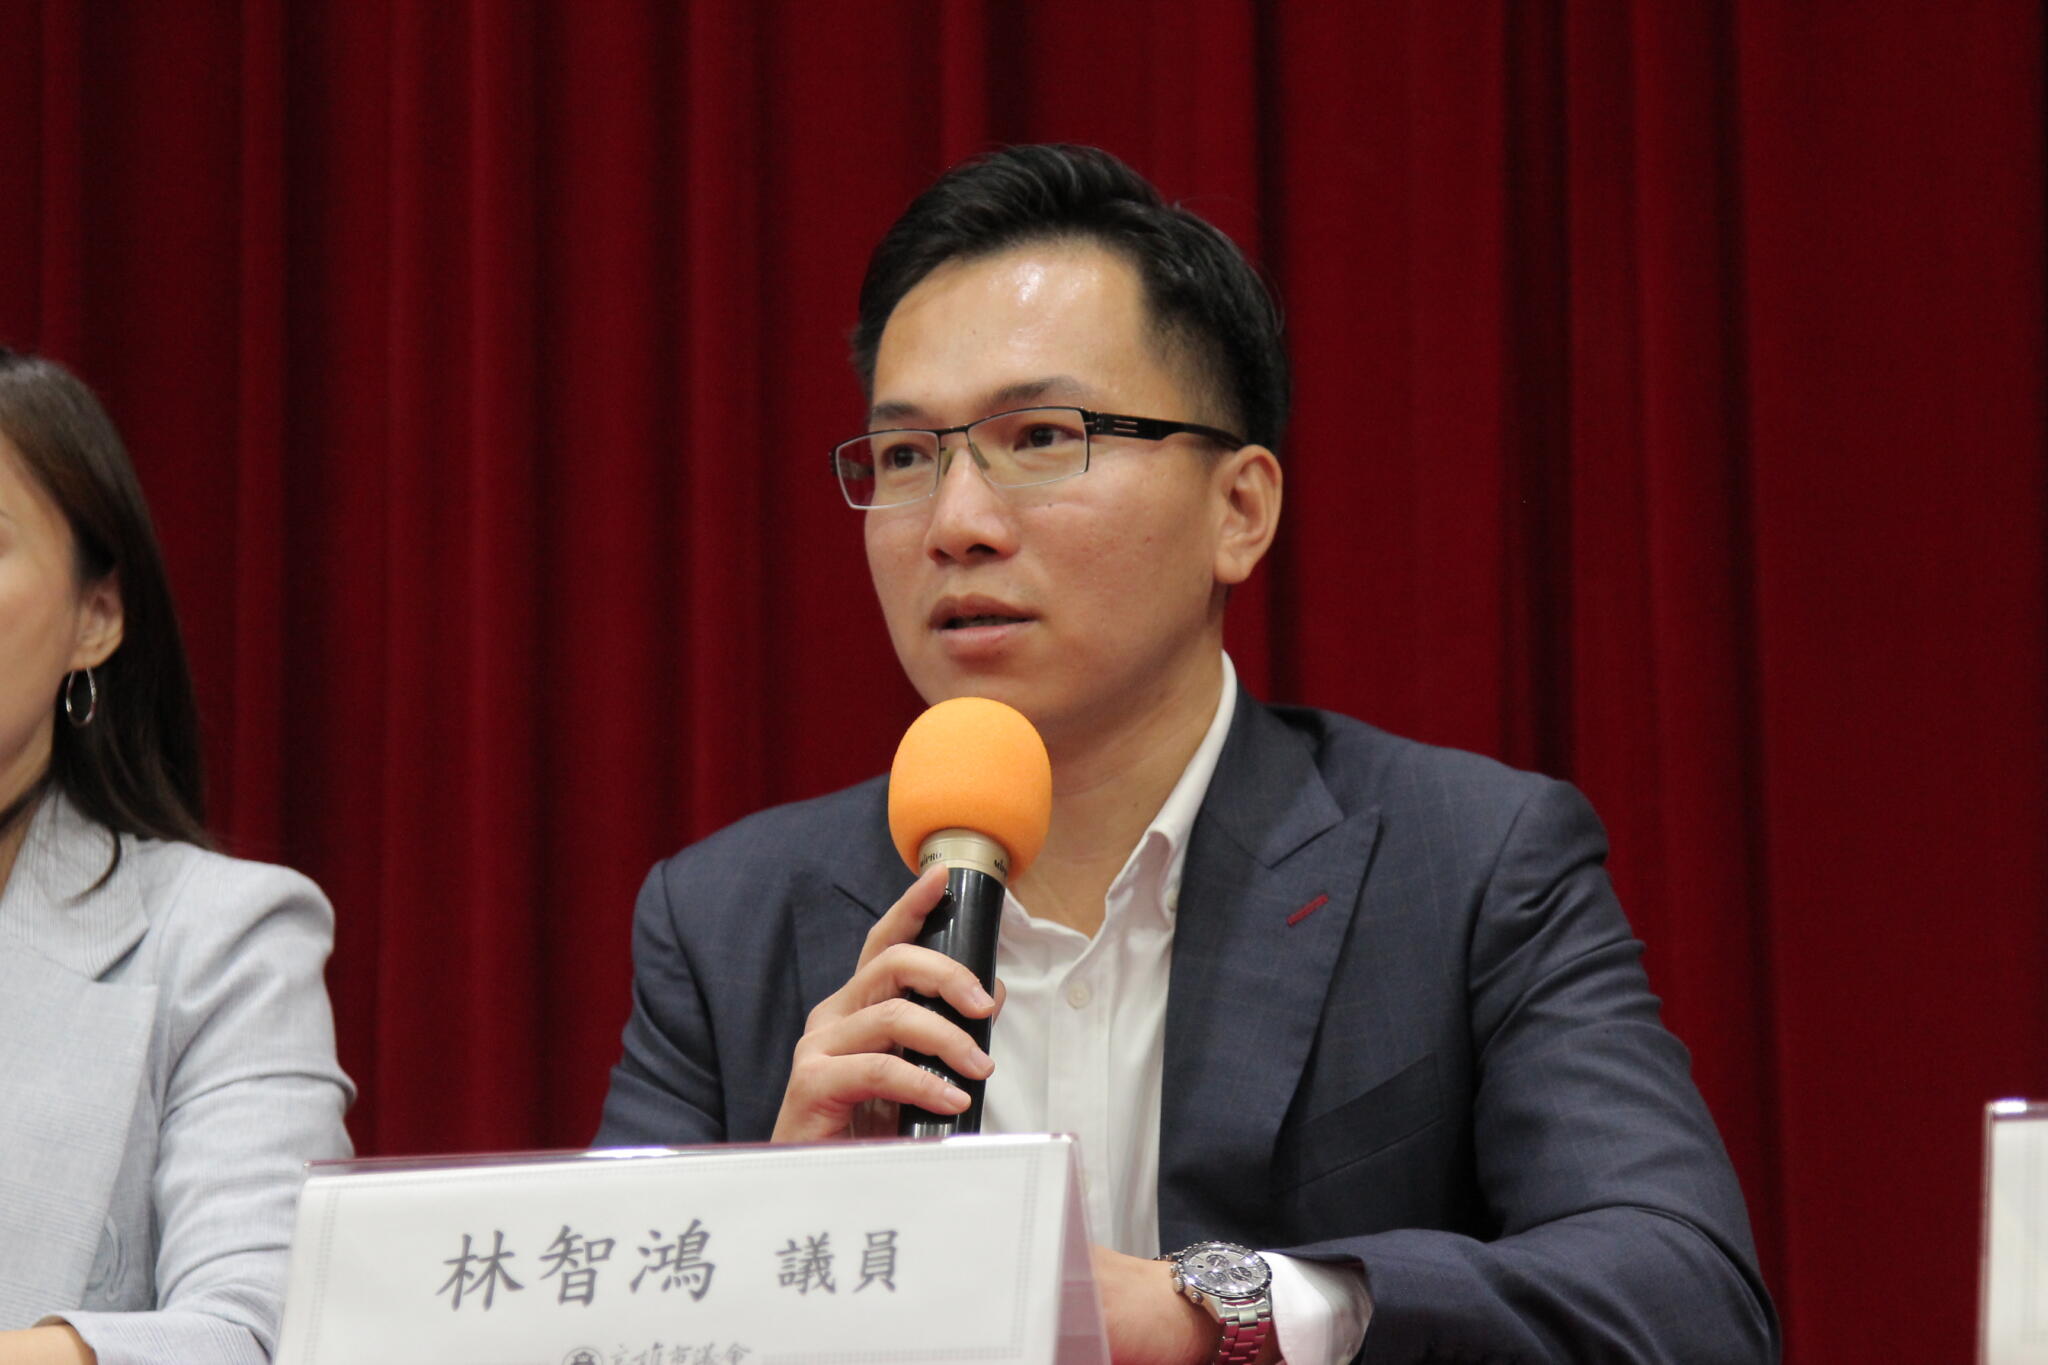 林智鴻揭柯志恩「擋前瞻語錄」鐵證 籲向市民謝罪